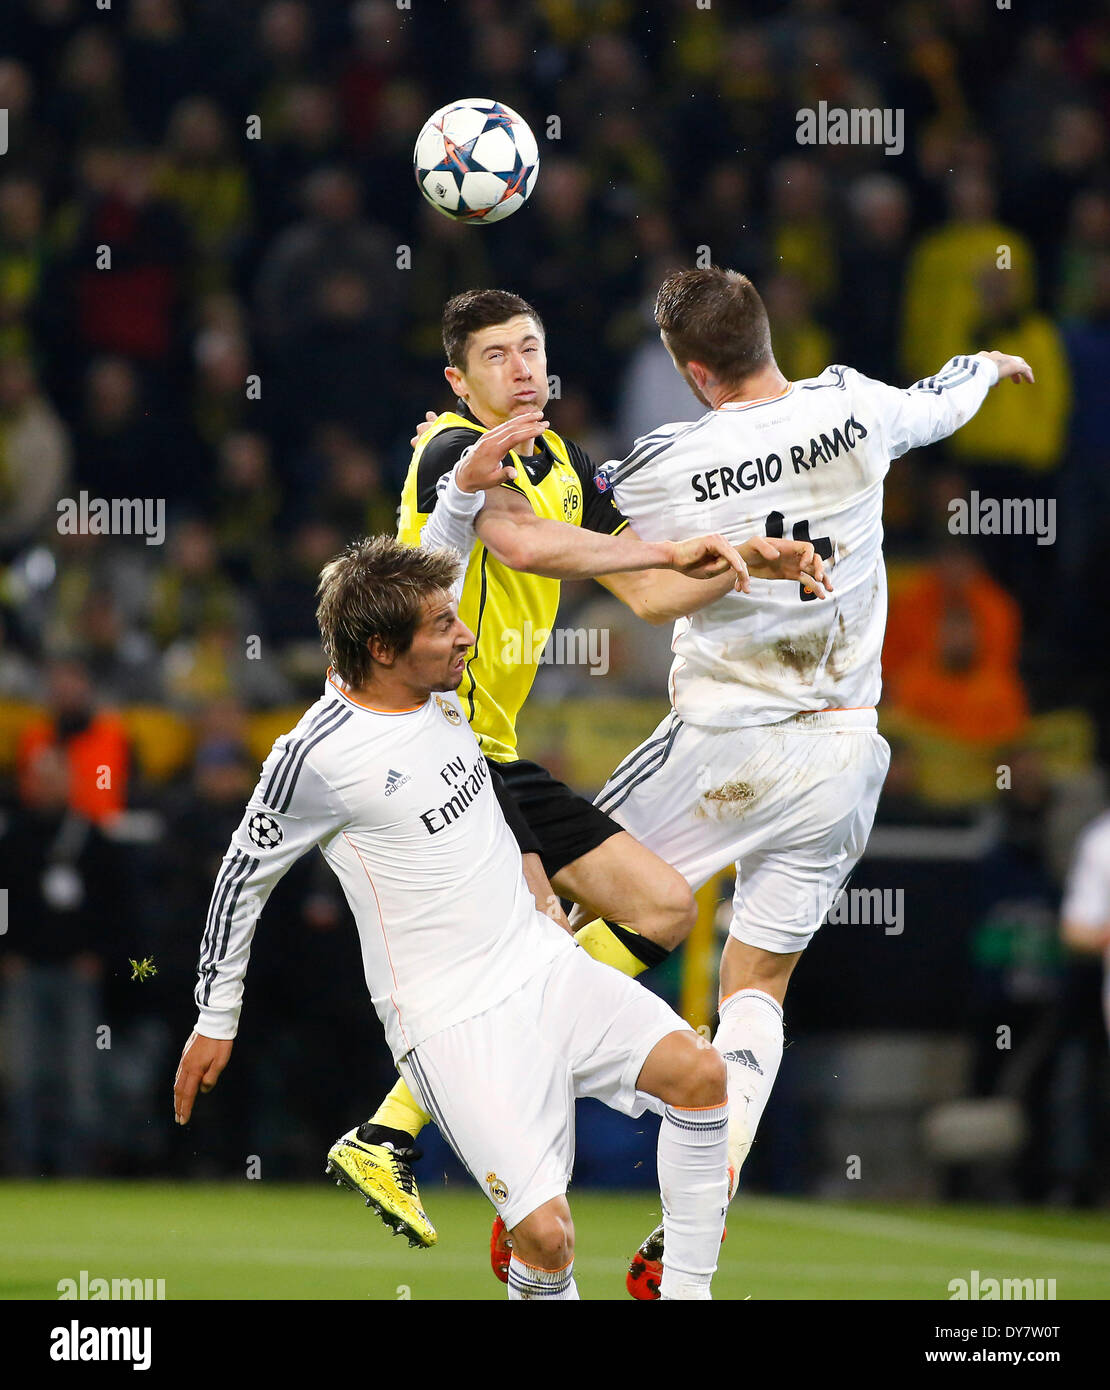 Dortmunds Robert Lewandowski (M) salta de un cabezal contra Fabio Coentrao (L) y Sergio Ramos en los cuartos de final de la Liga de Campeones de la UEFA partido entre el